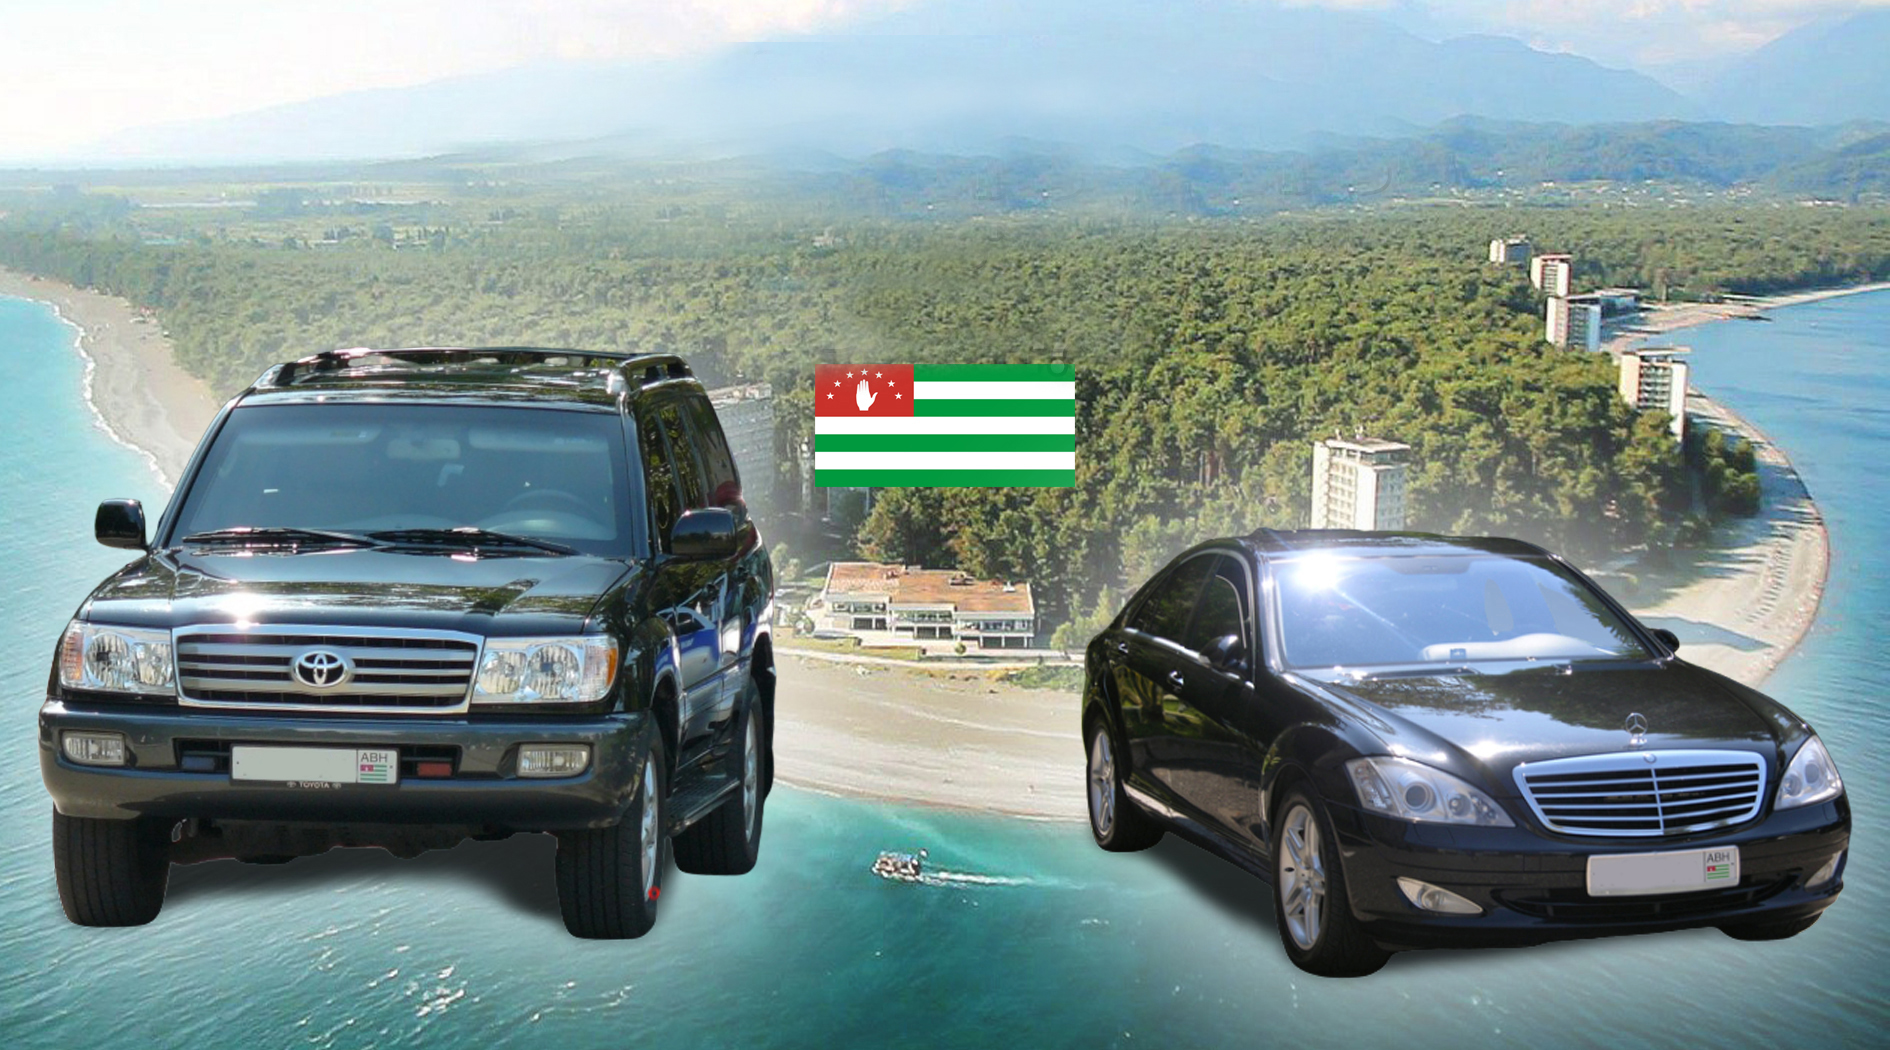 Купить Страховку На Автомобиль В Абхазии